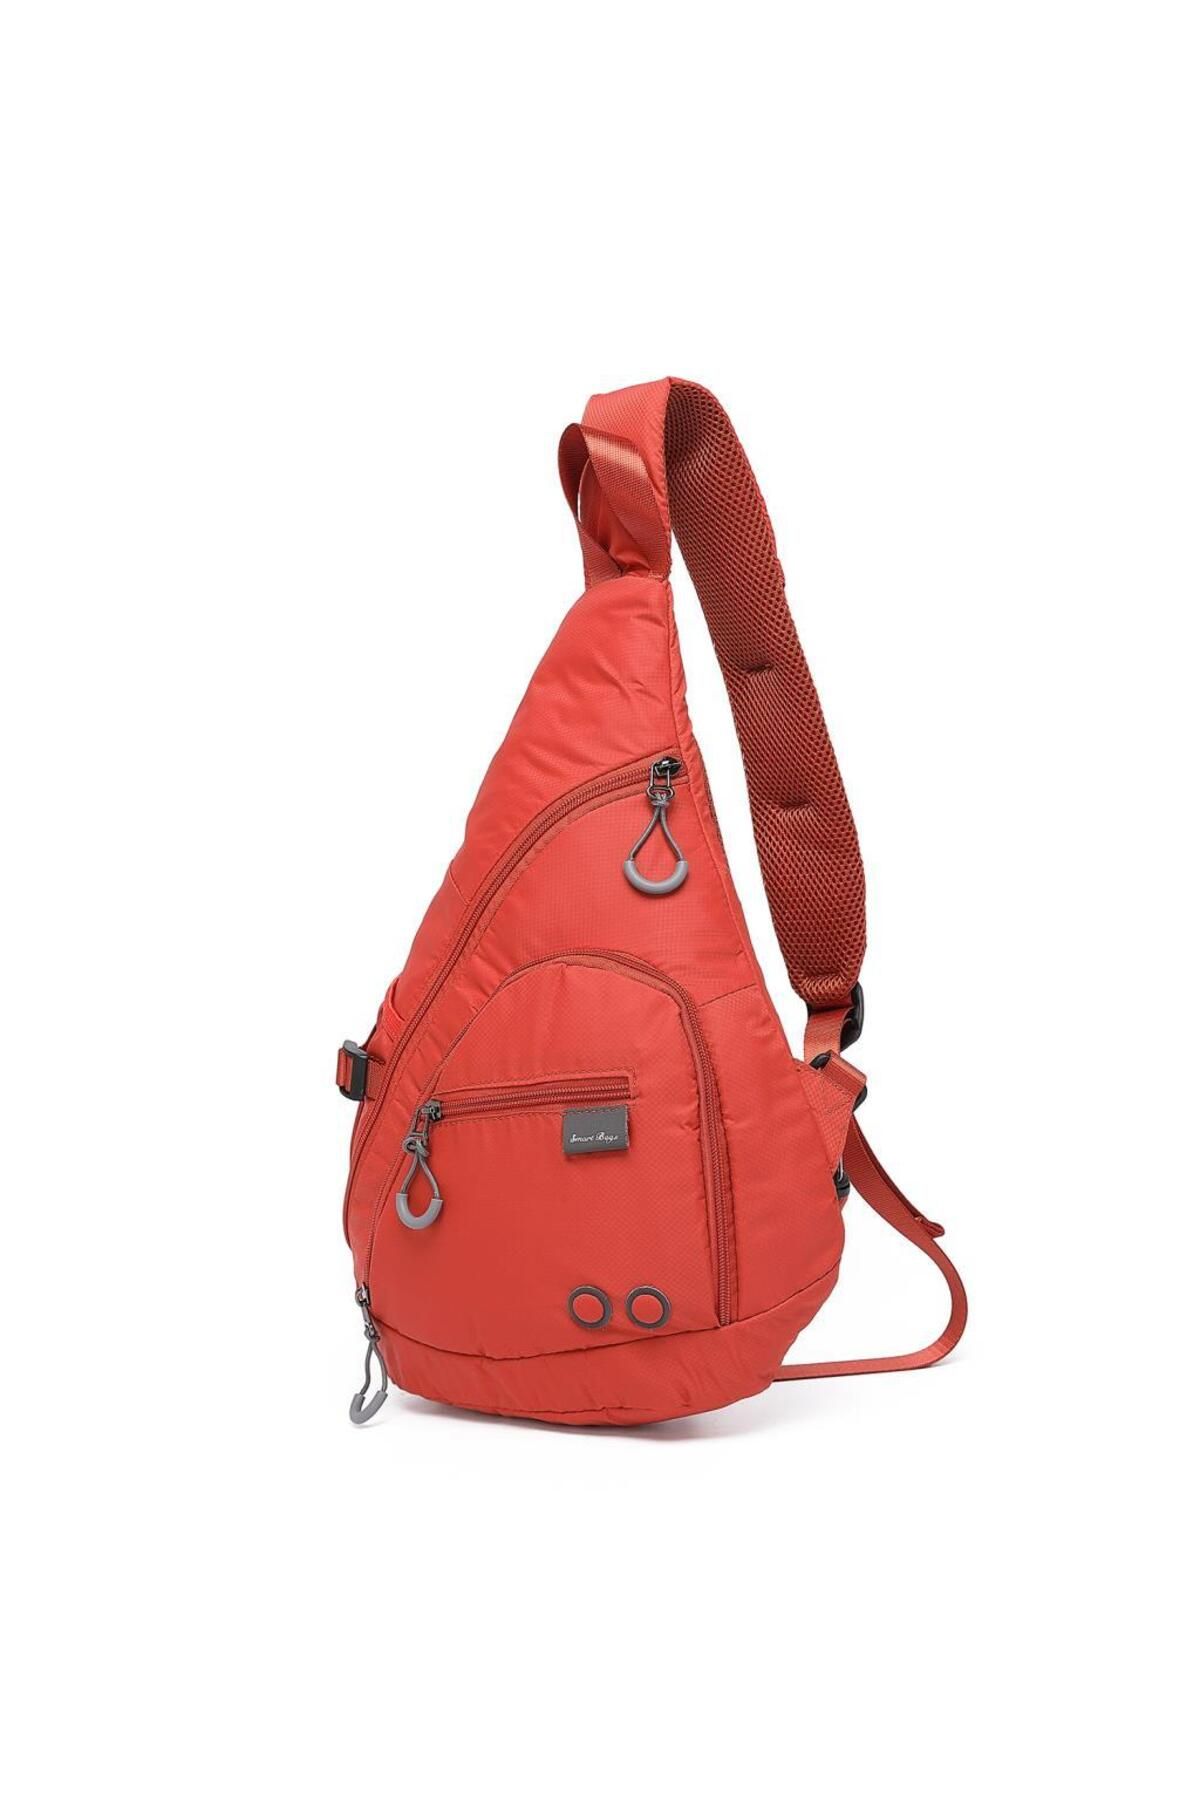 Smart Bags Ekstra Hafif Uniseks Bodybag Omuz Çantası 3228